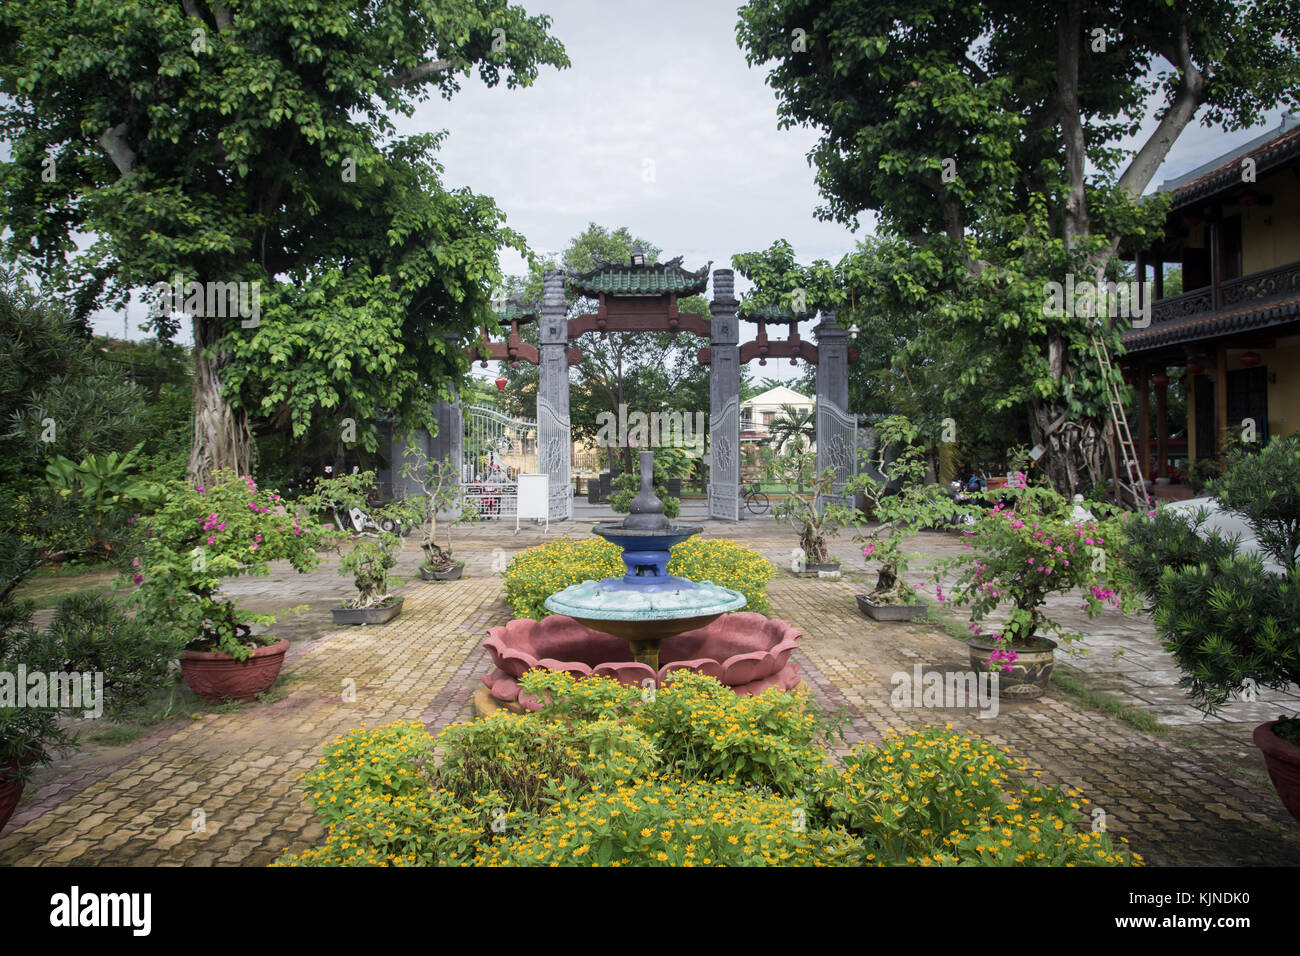 garden of temple in Vietnam Stock Photo